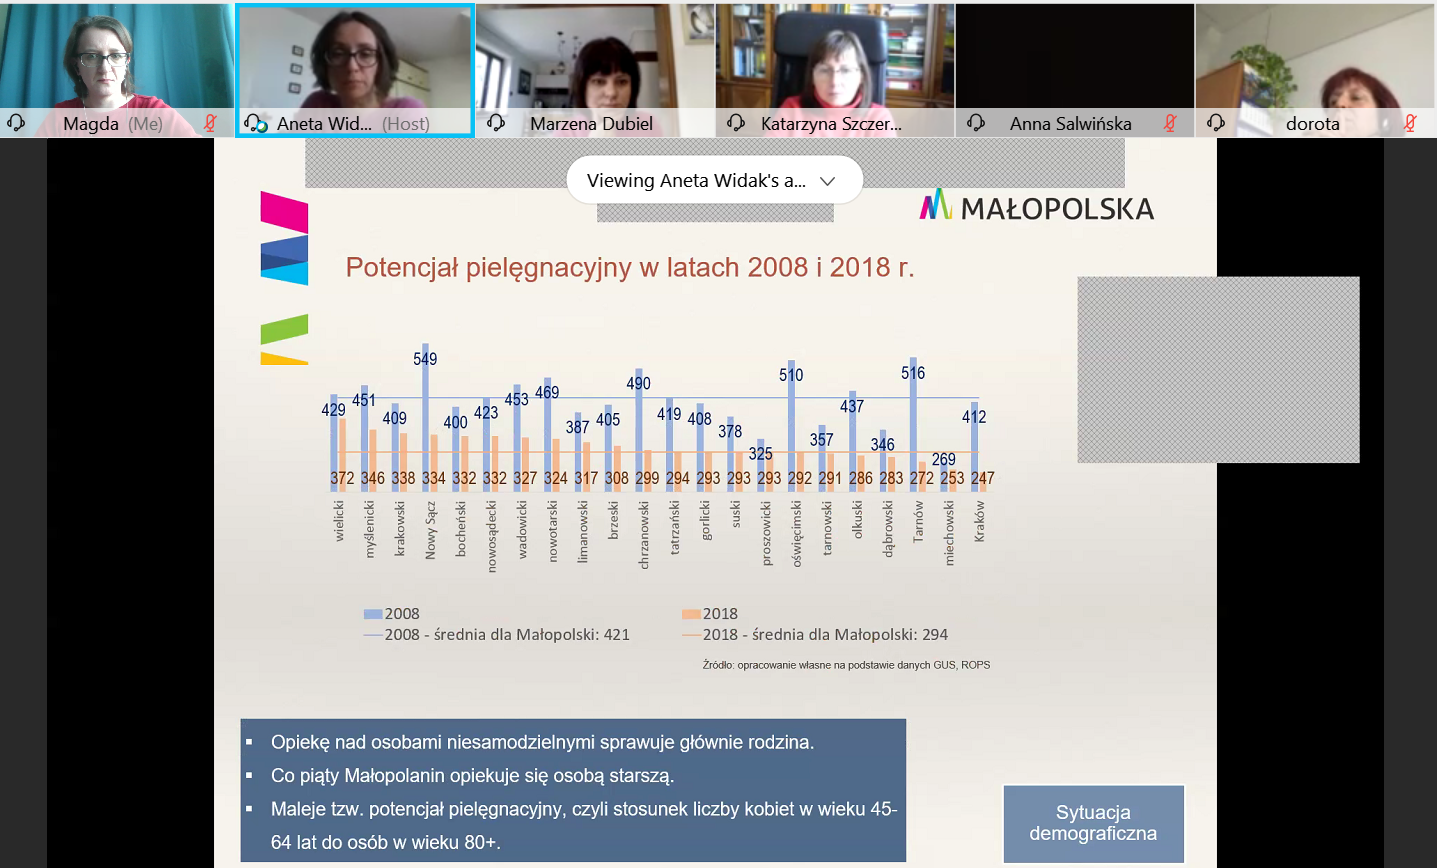 Zrzut ekranowy z platformy internetowej_zdjęcia uczestników spotkania i slajd ilustrujący problematyke opieki domowej